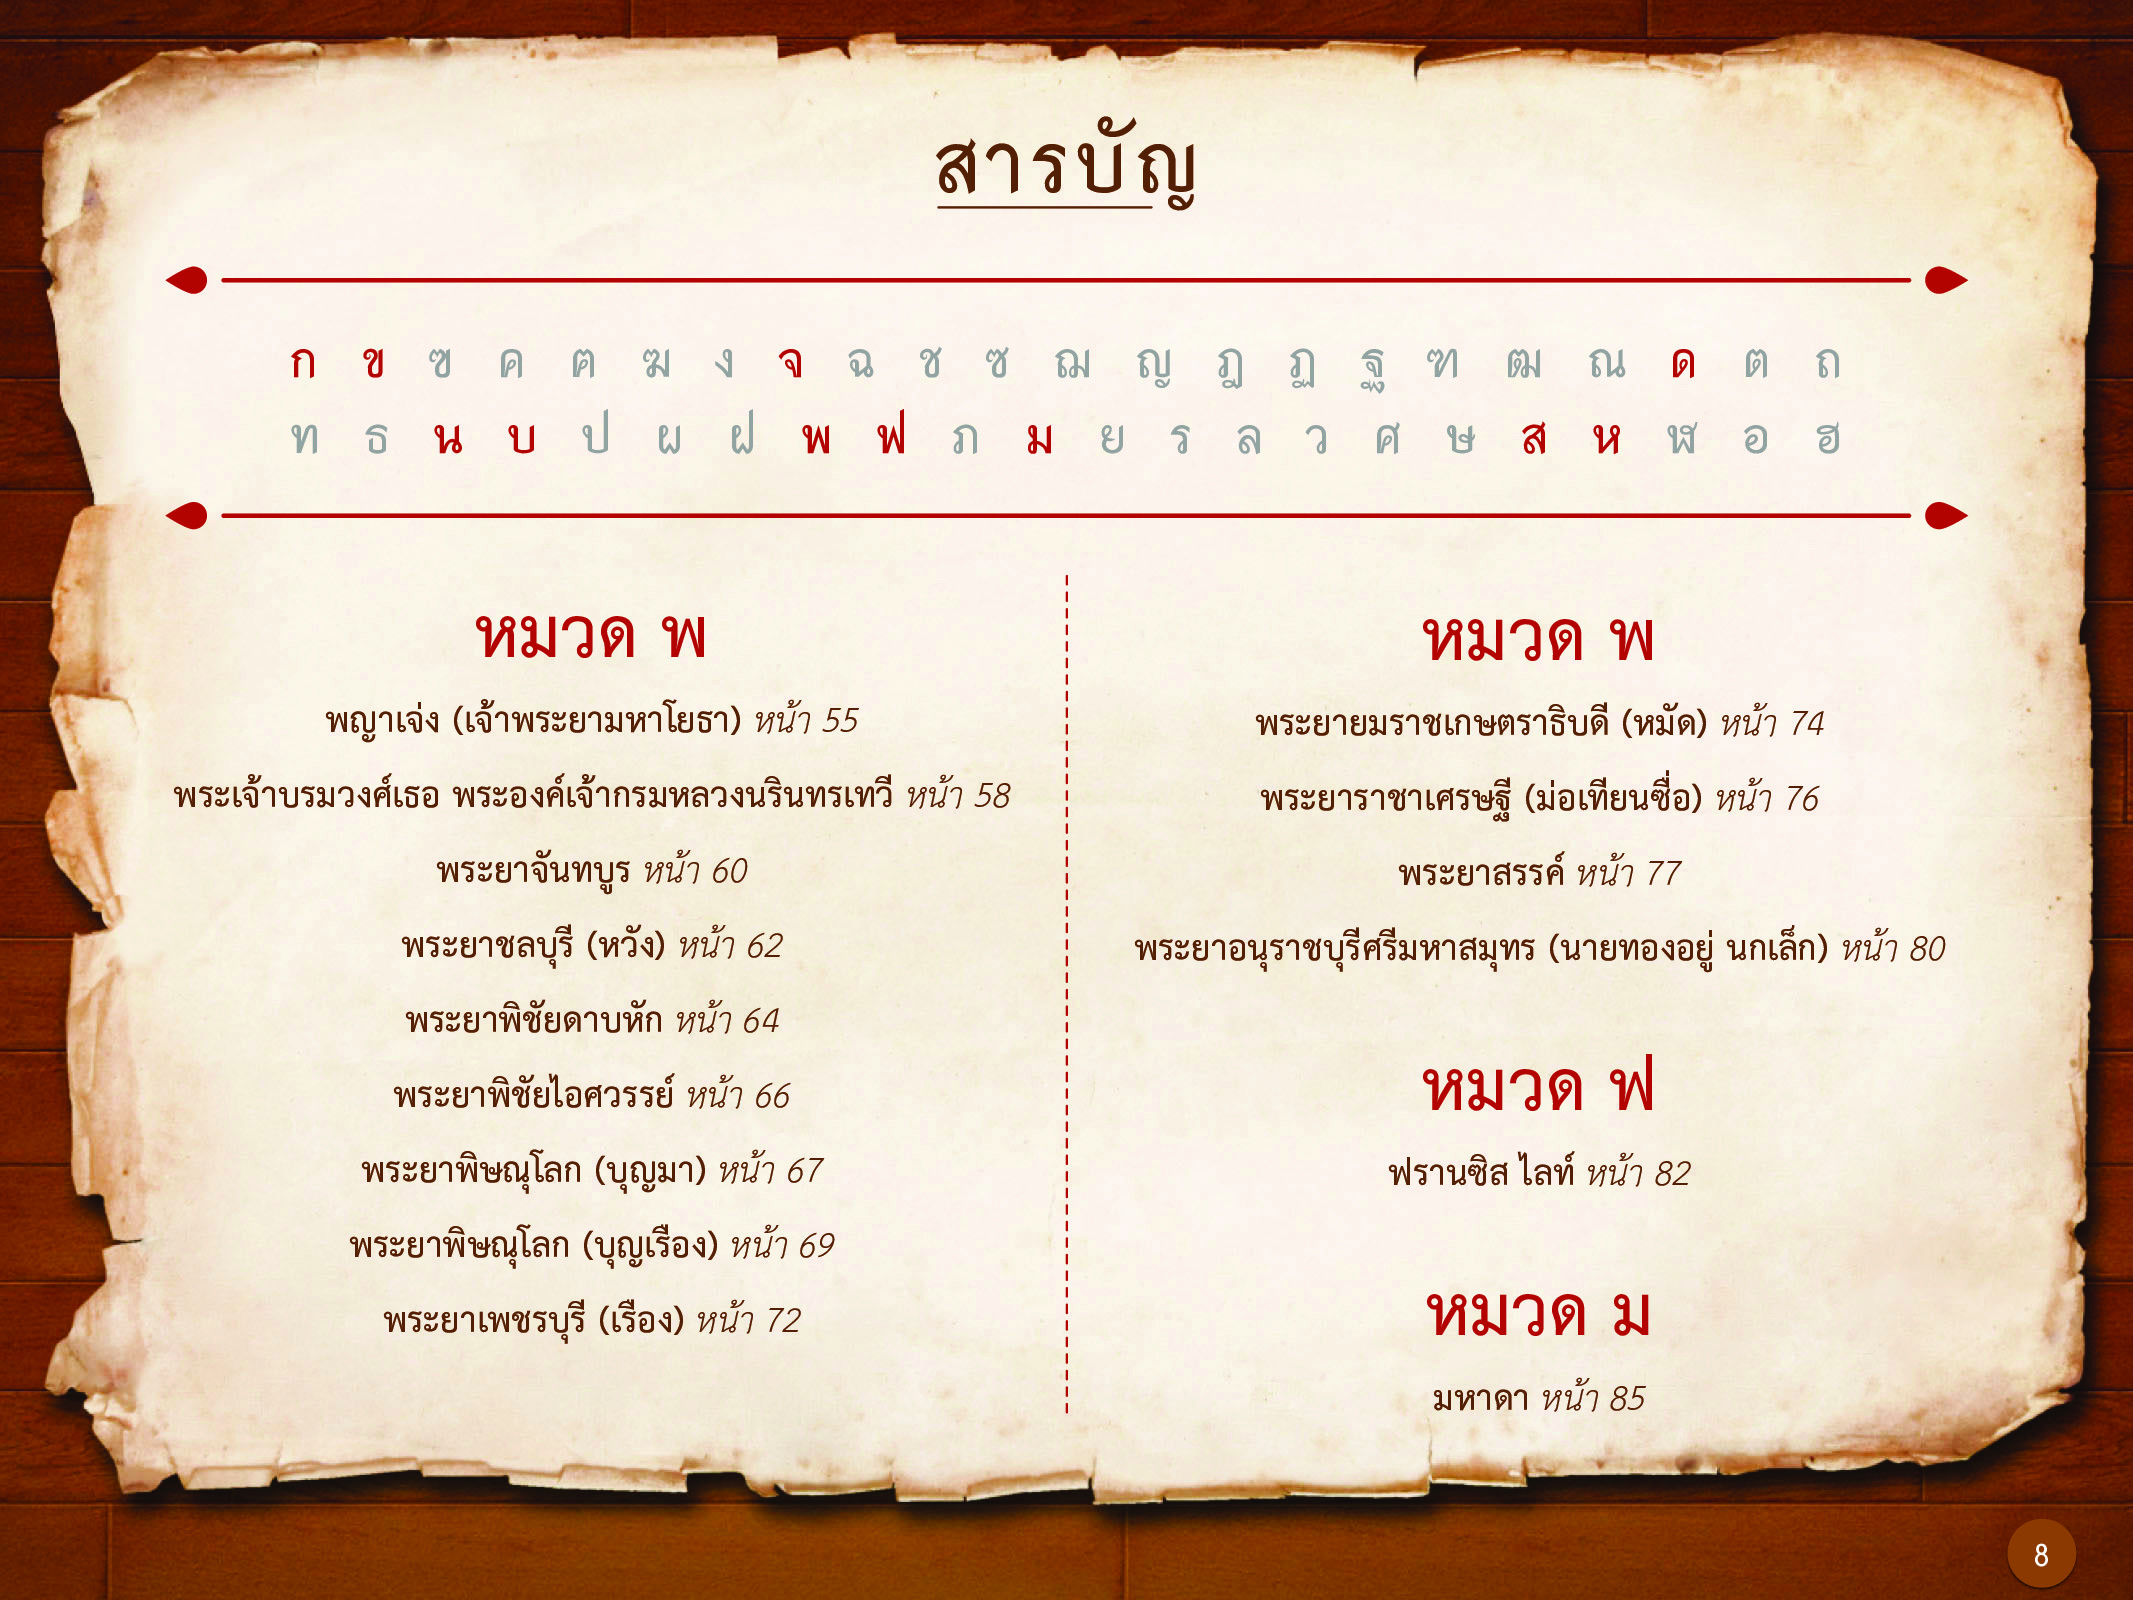 ประวัติศาสตร์กรุงธนบุรี ./images/history_dhonburi/8.jpg